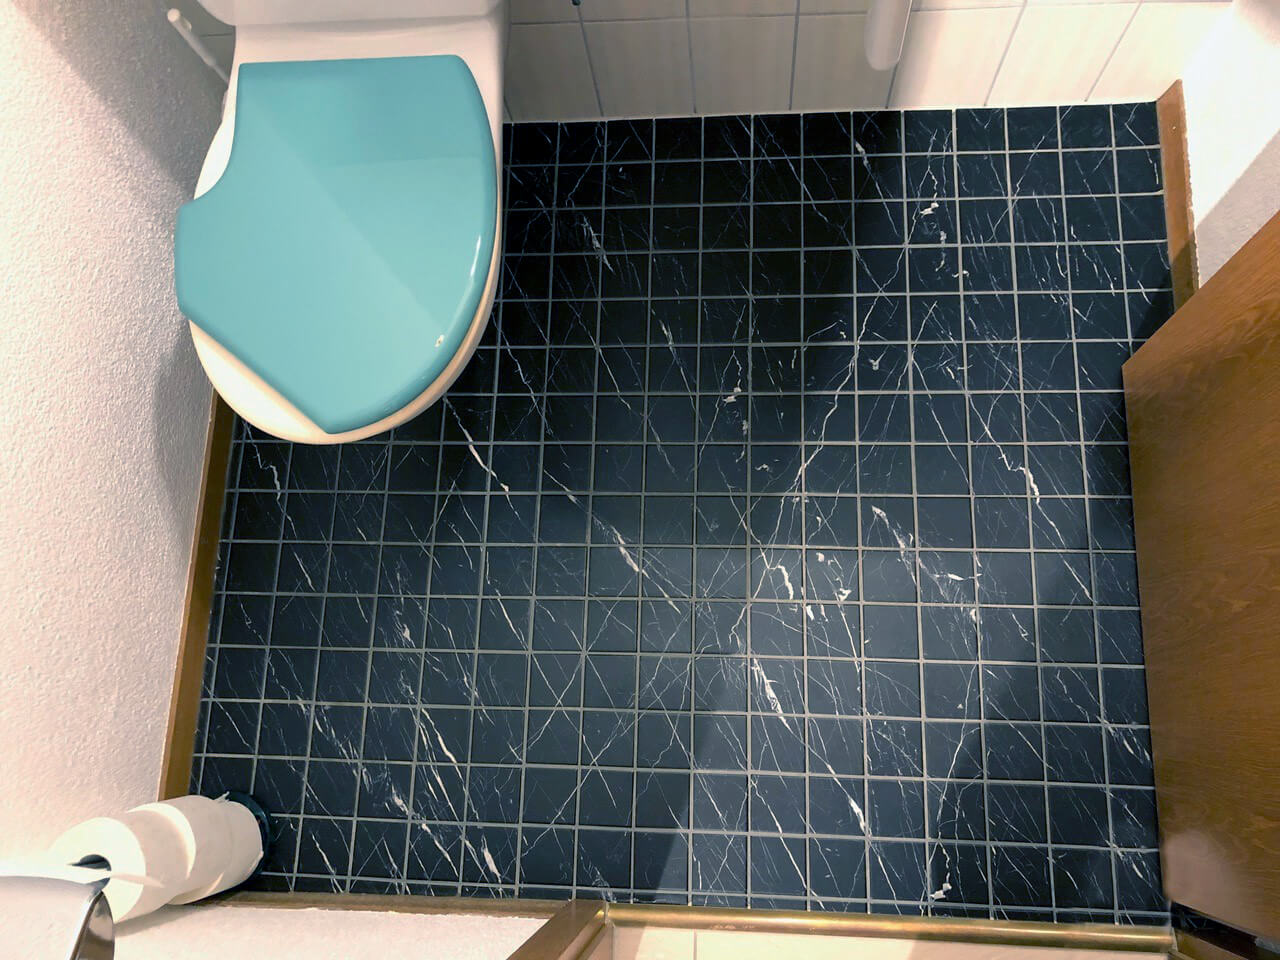 Diseño de baños creativo con adhesivos para baldosas ejemplo de baldosas en WC de invitados en mármol negro 2